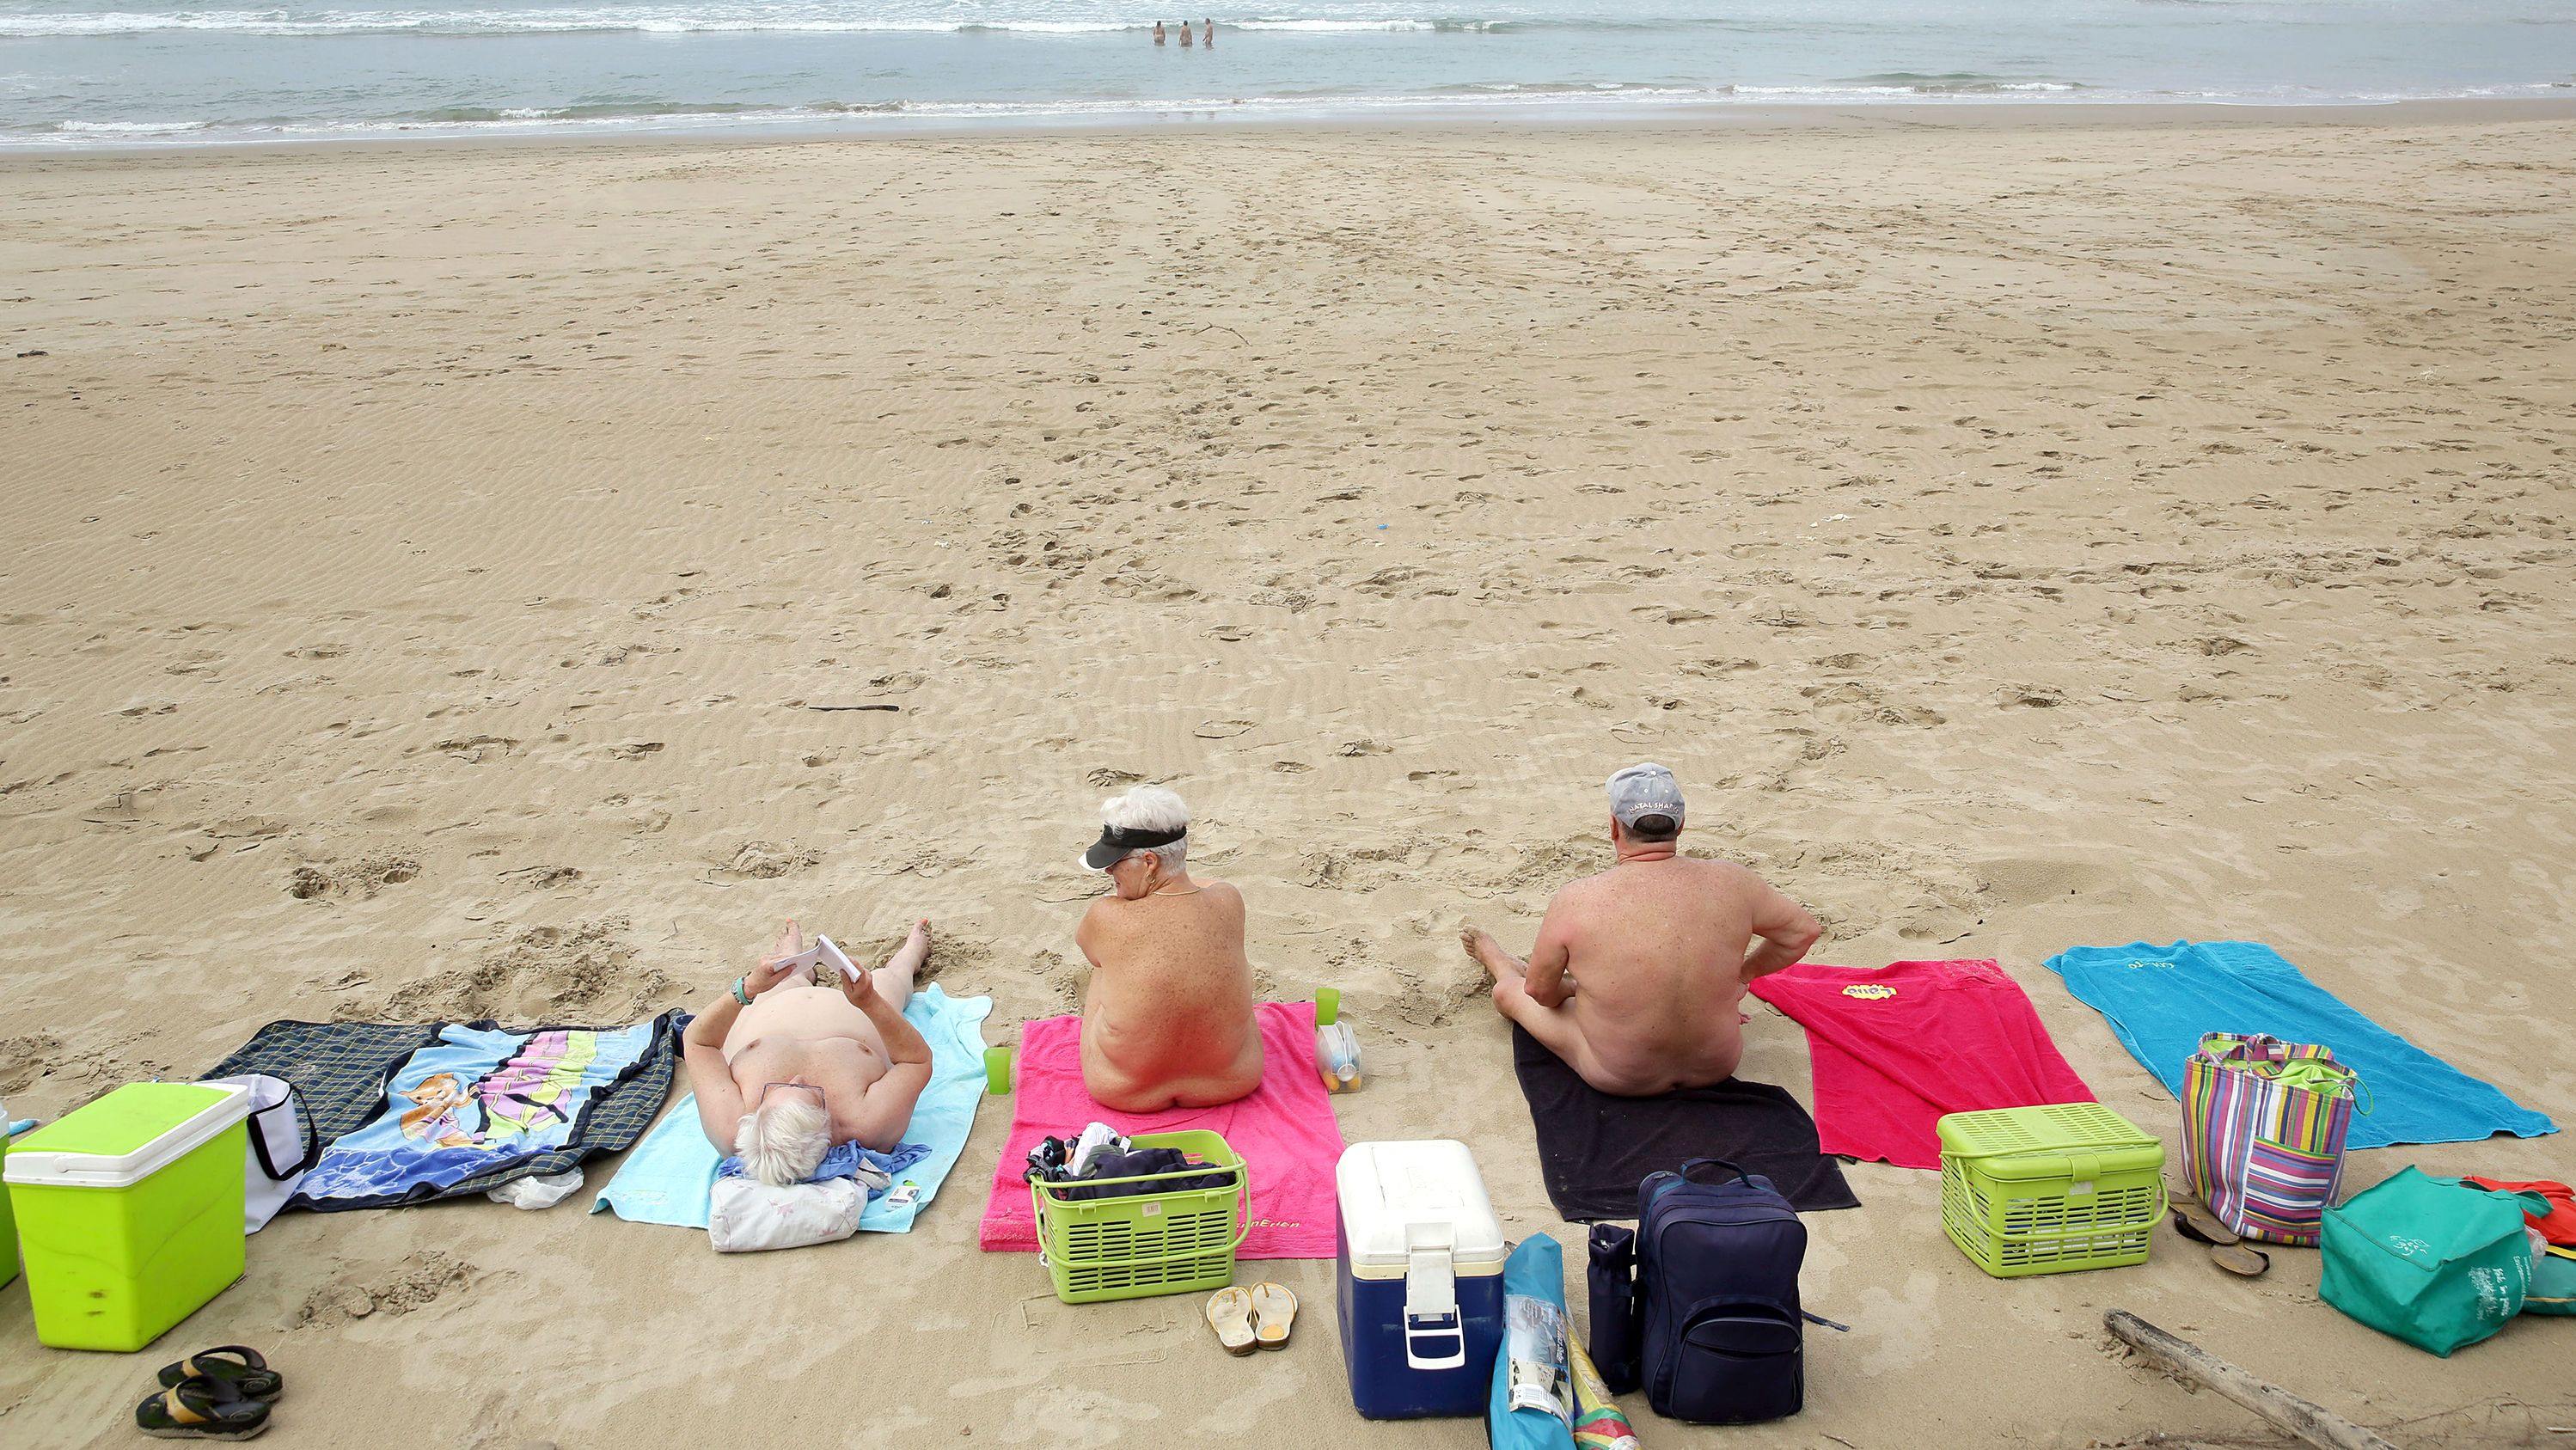 Exhibitionist Beach Videos France - 15 best nude beaches around the world | CNN